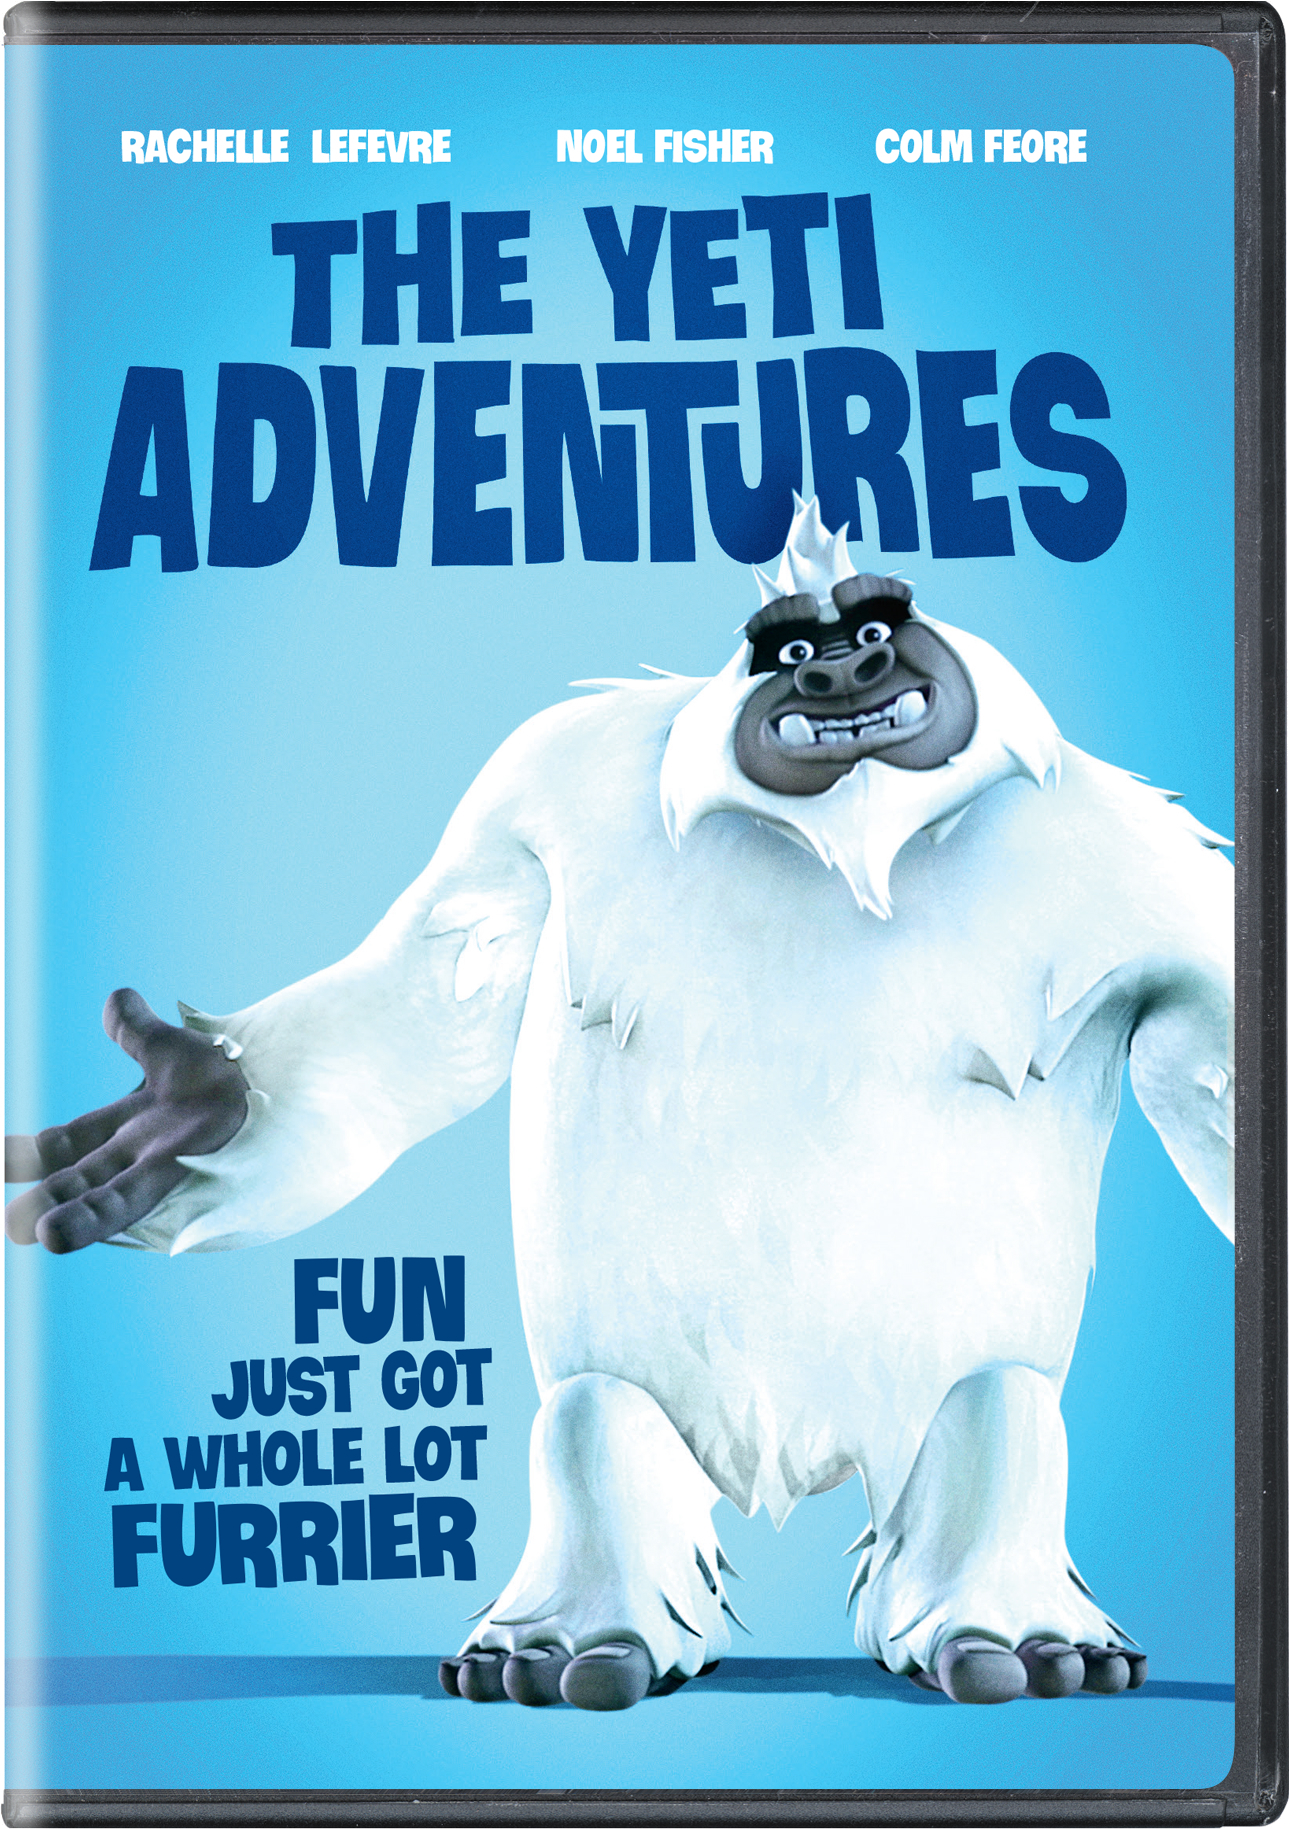 The Yeti Adventures - DVD [ 2018 ]  - Adventure Movies On DVD - Movies On GRUV